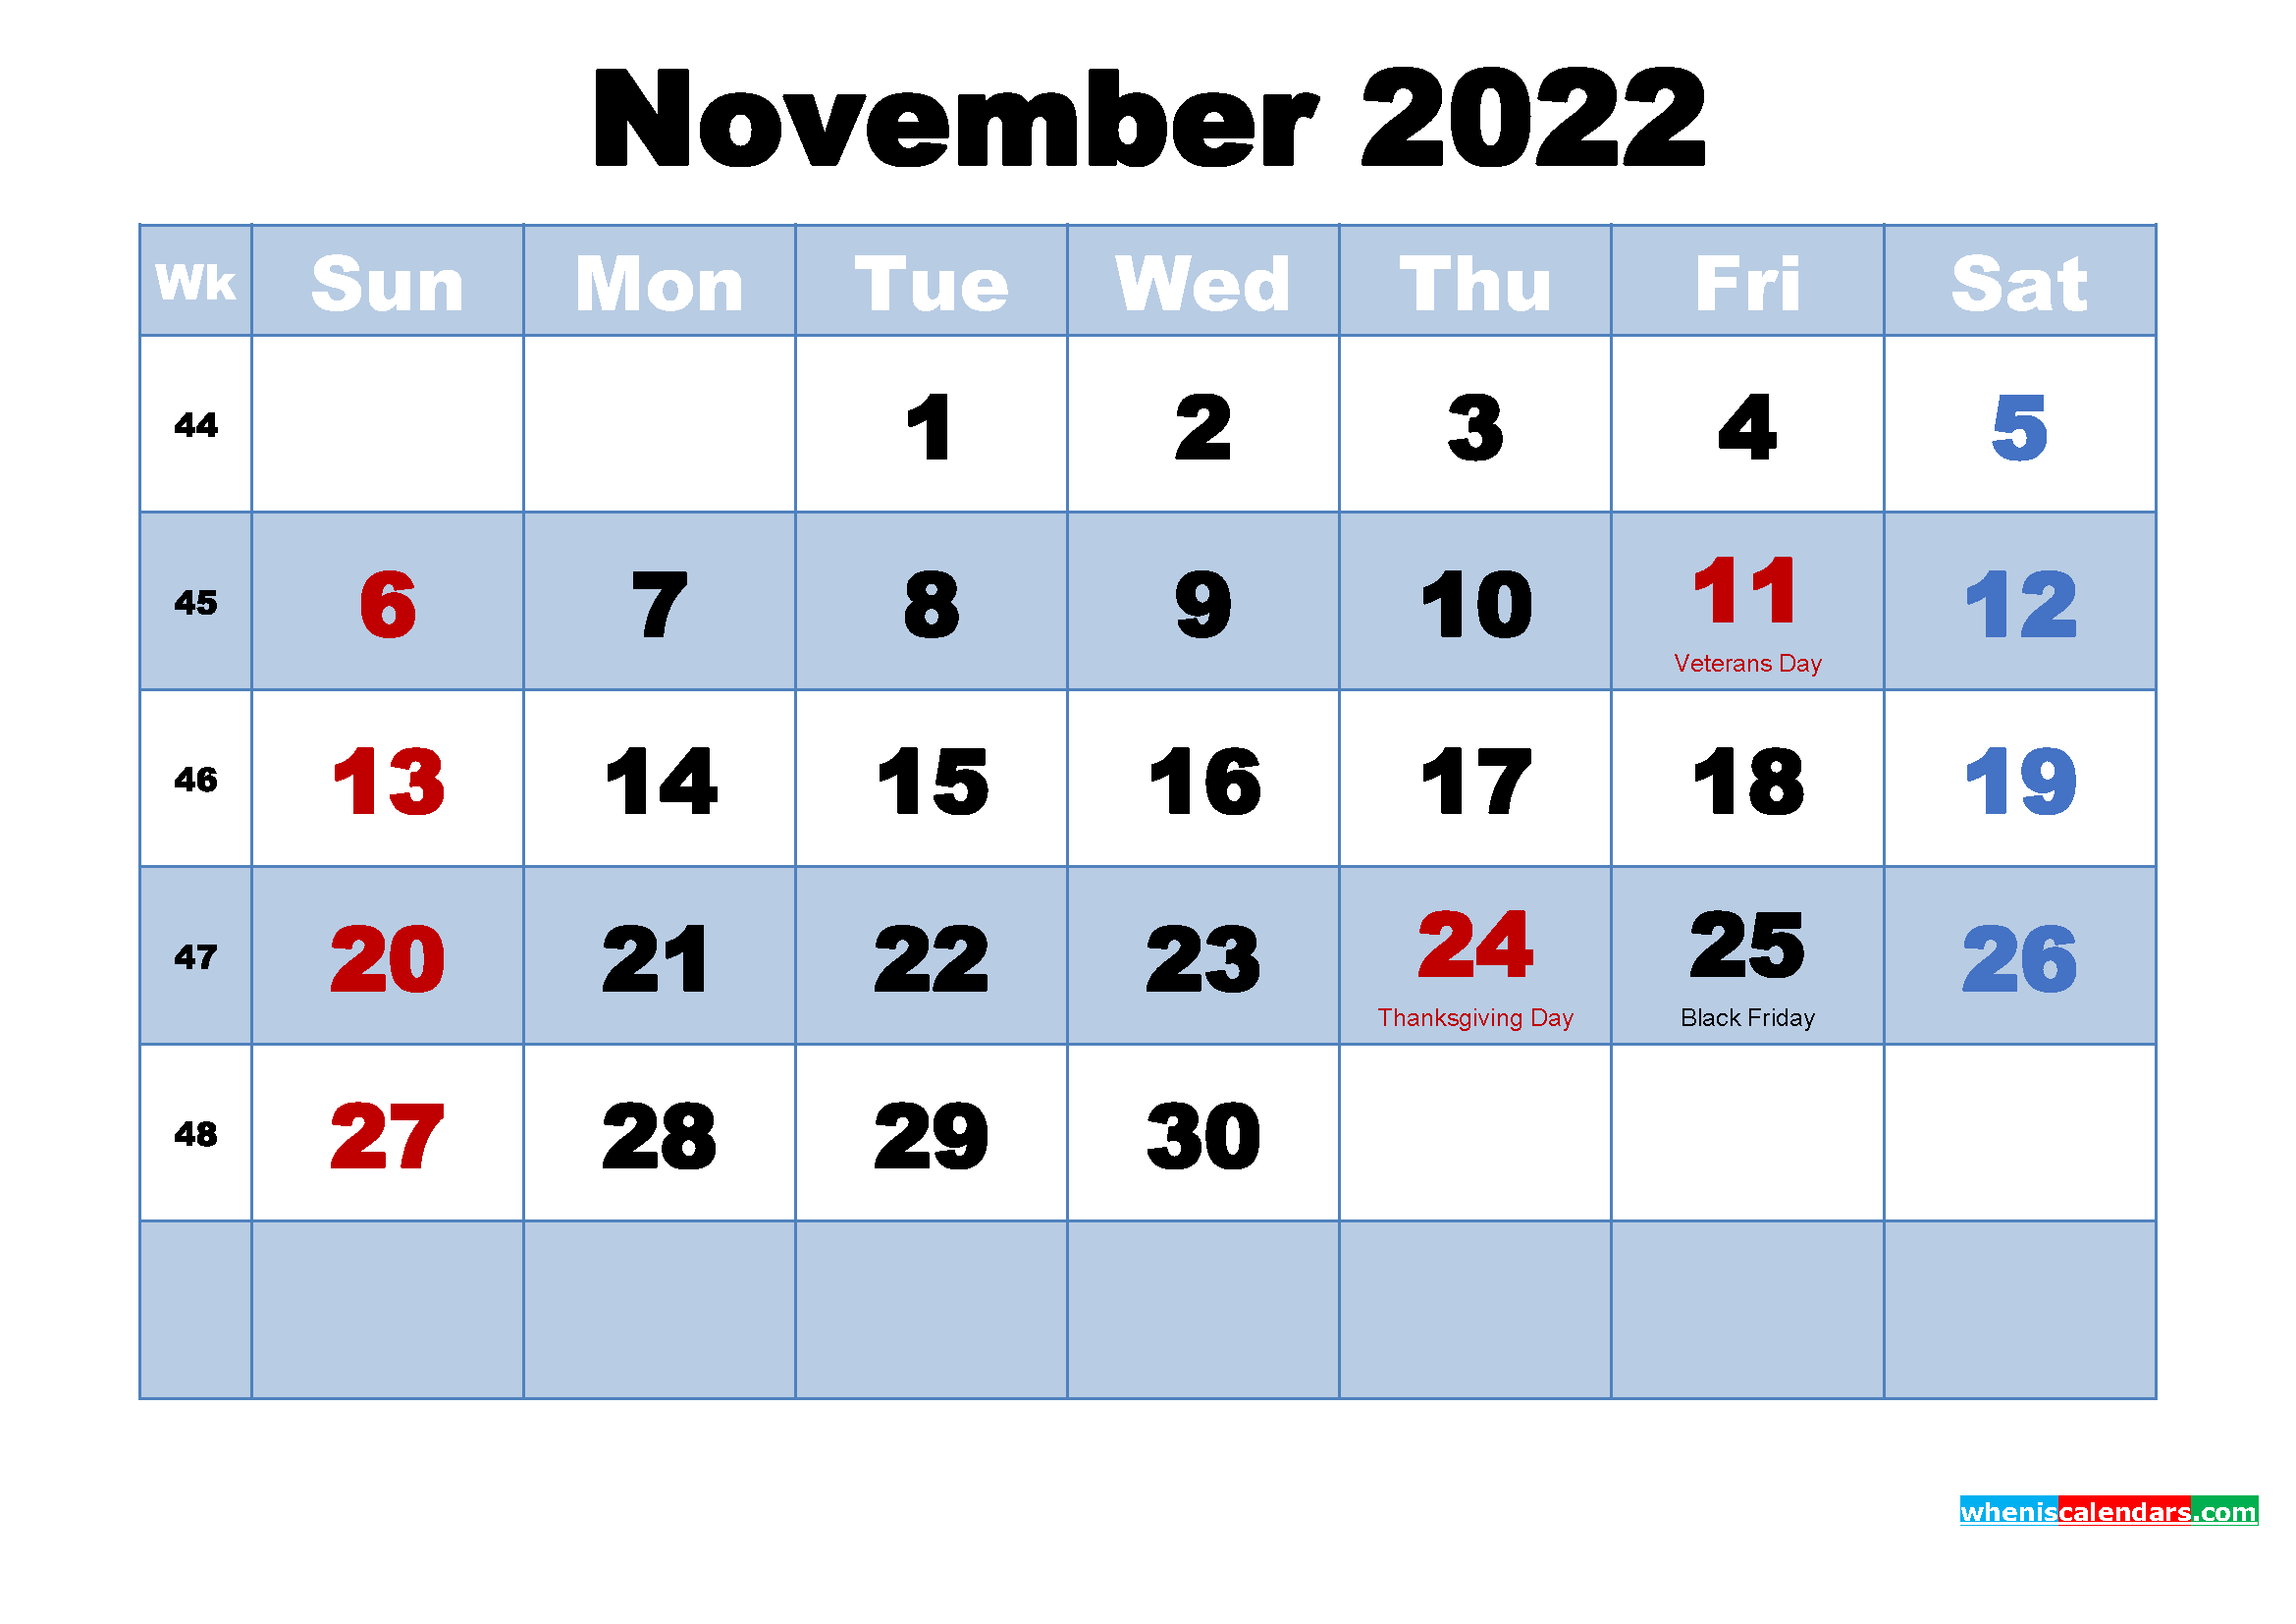 November 2022 Calendar Wallpapers High Resolution